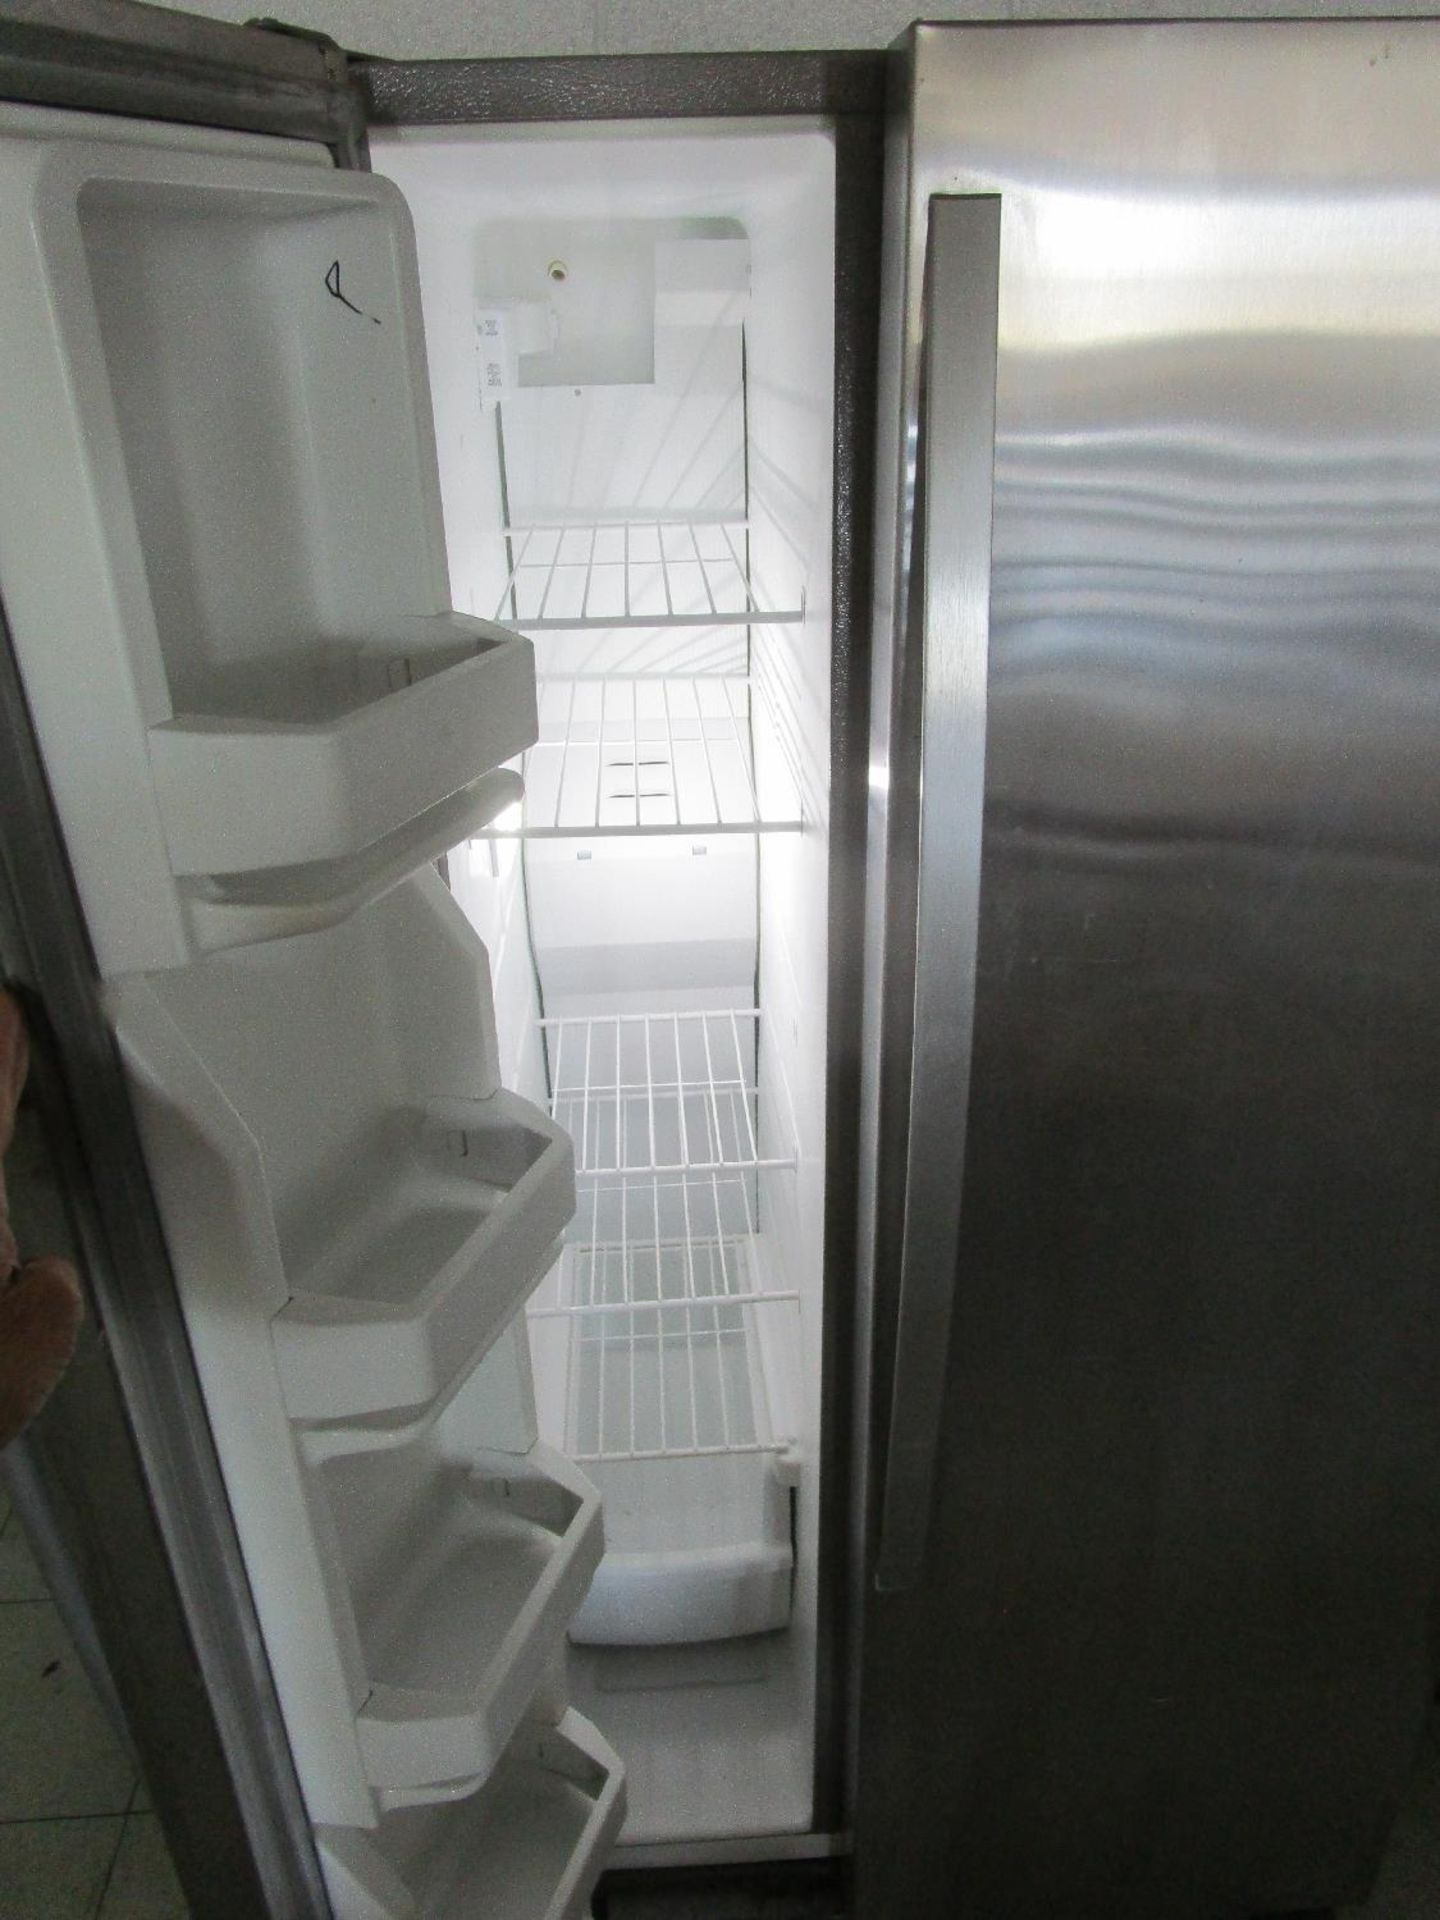 Whirlpool Refrigerator/Freezer - Image 3 of 3